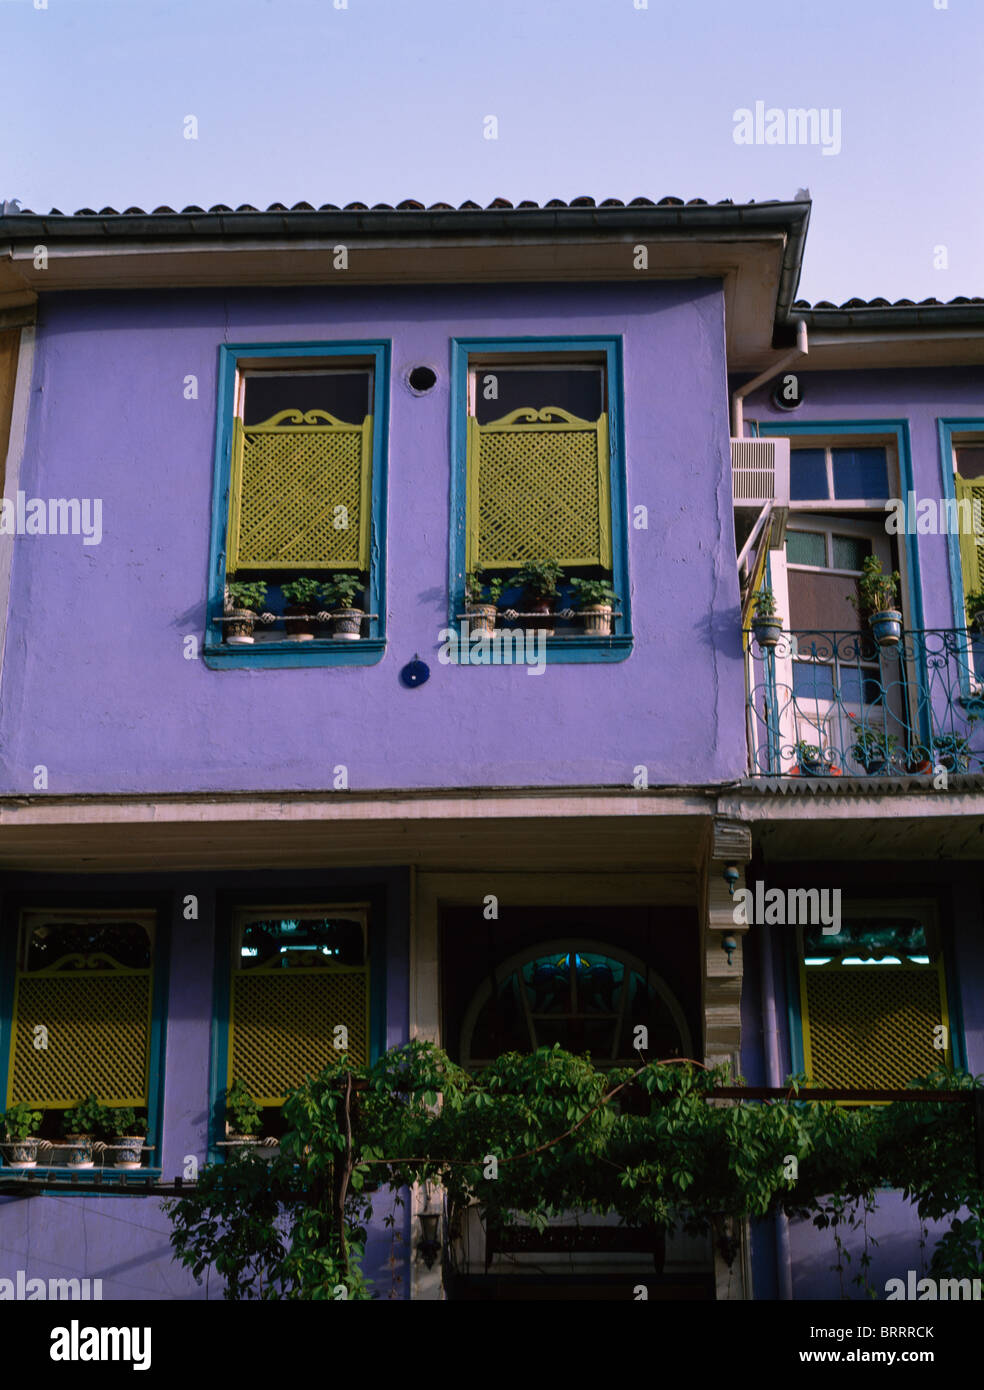 Traforature persiane alle finestre del tradizionale turco viola townhouse Foto Stock